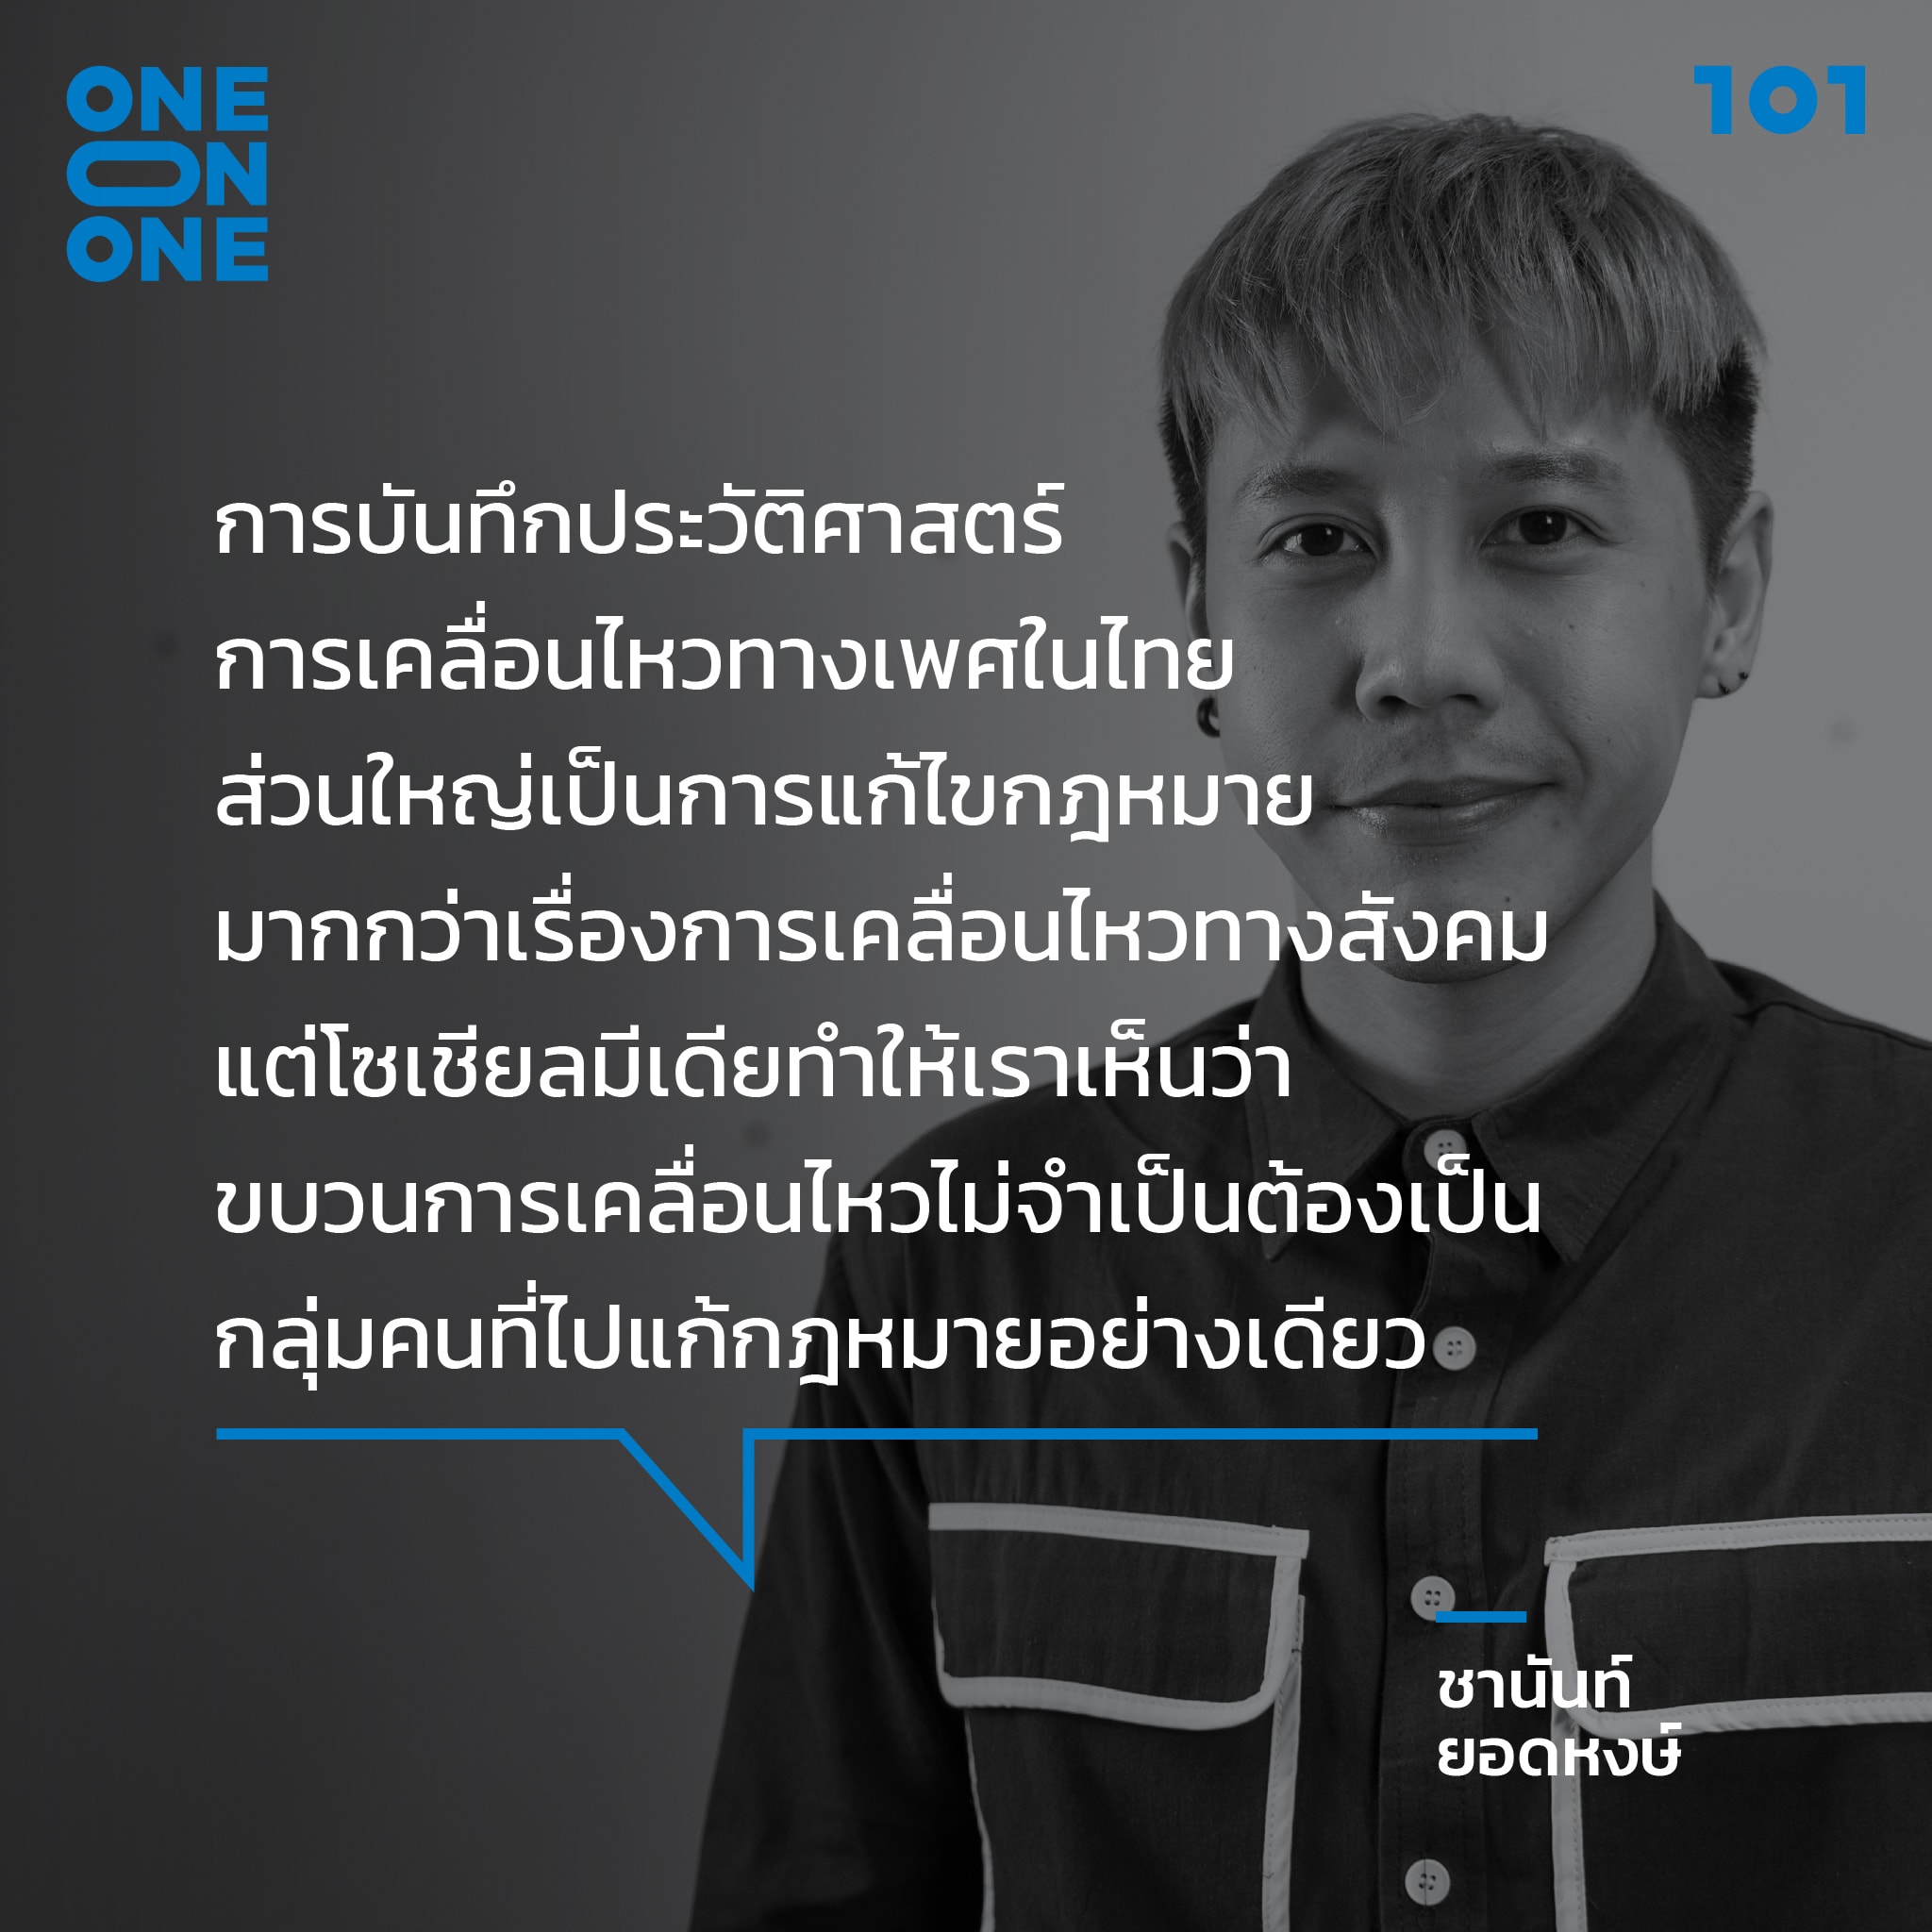 จาก 'เฟมินิสต์' สู่ 'เฟมทวิต': สำรวจความ(ไม่)เท่าเทียมทางเพศในสังคมไทย กับ ชานันท์ ยอดหงษ์